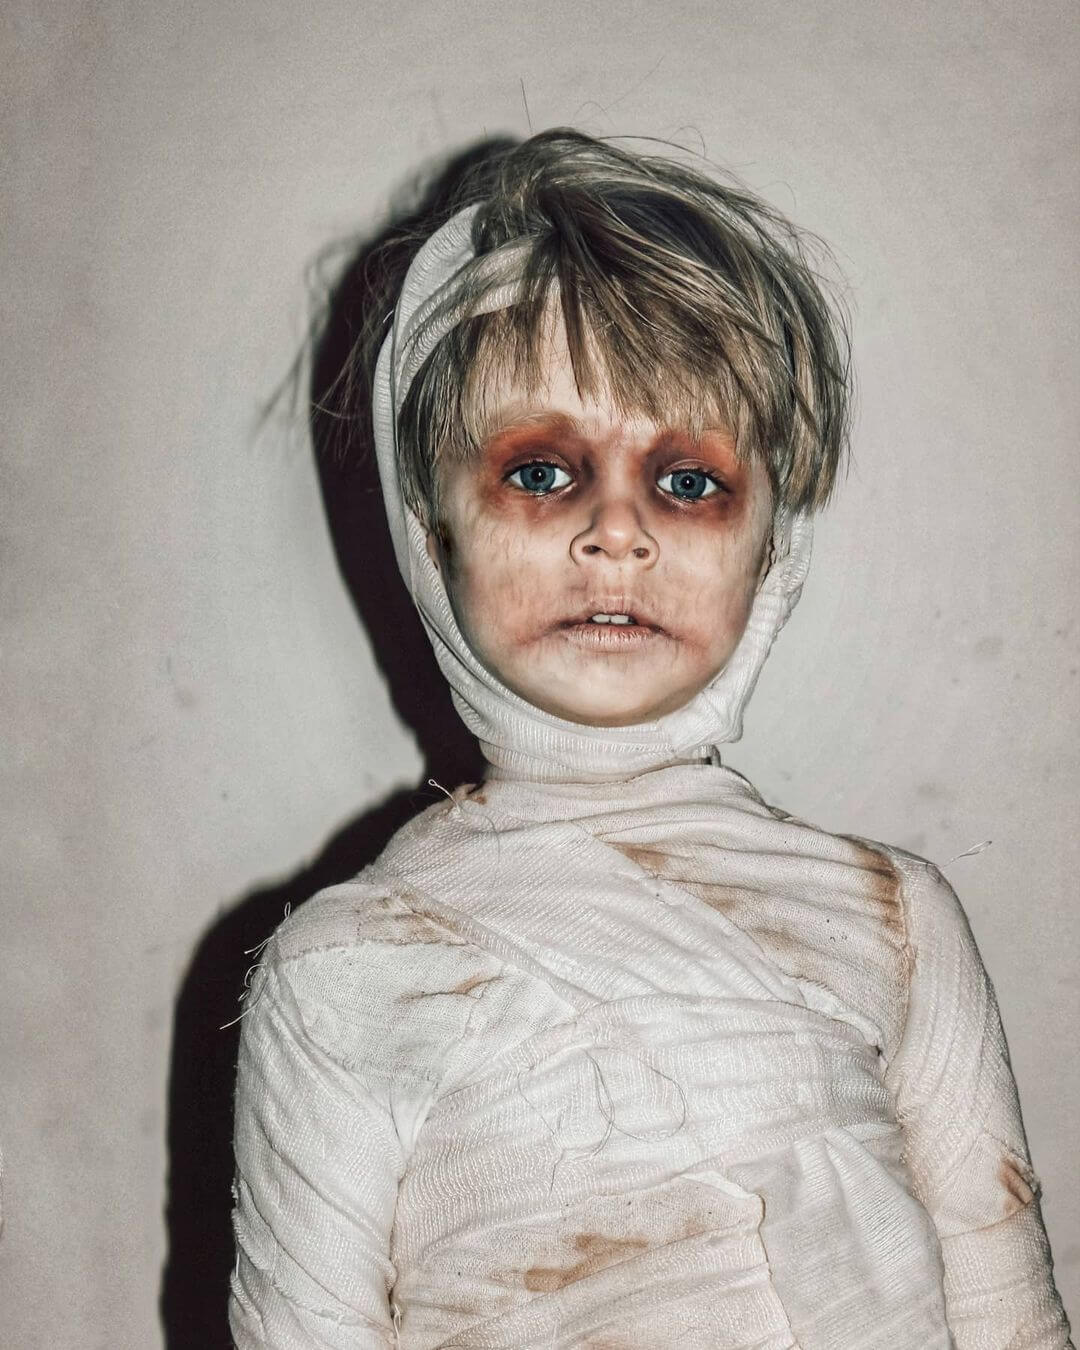 Kid's Halloween Makeup The Mummy Look